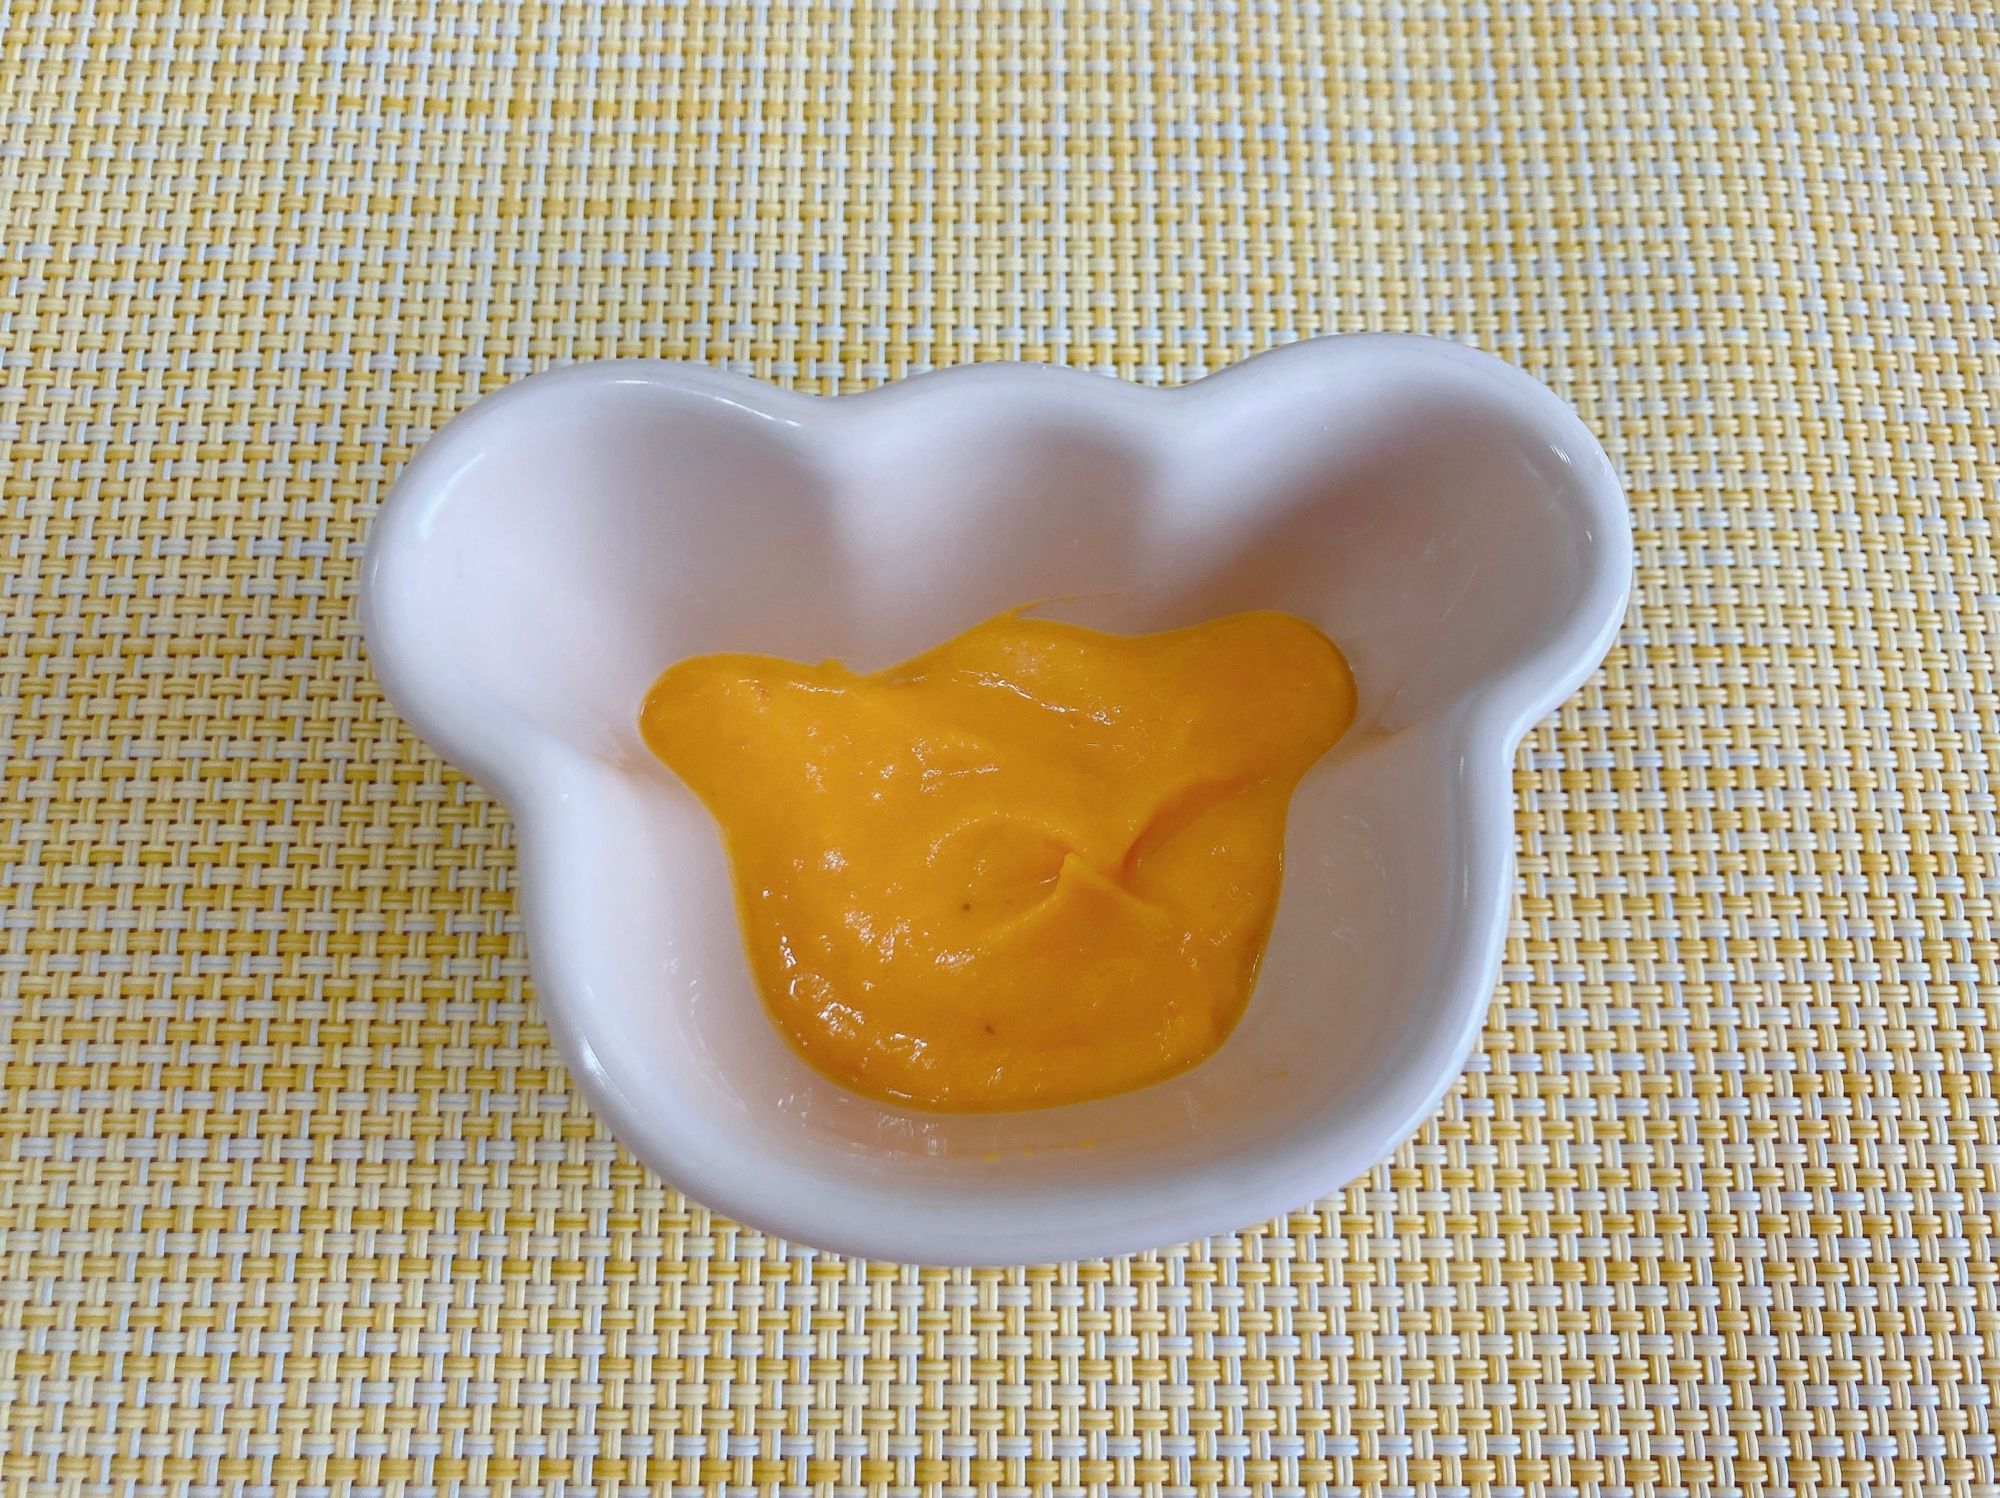 【離乳食 初期〜】かぼちゃヨーグルトサラダ